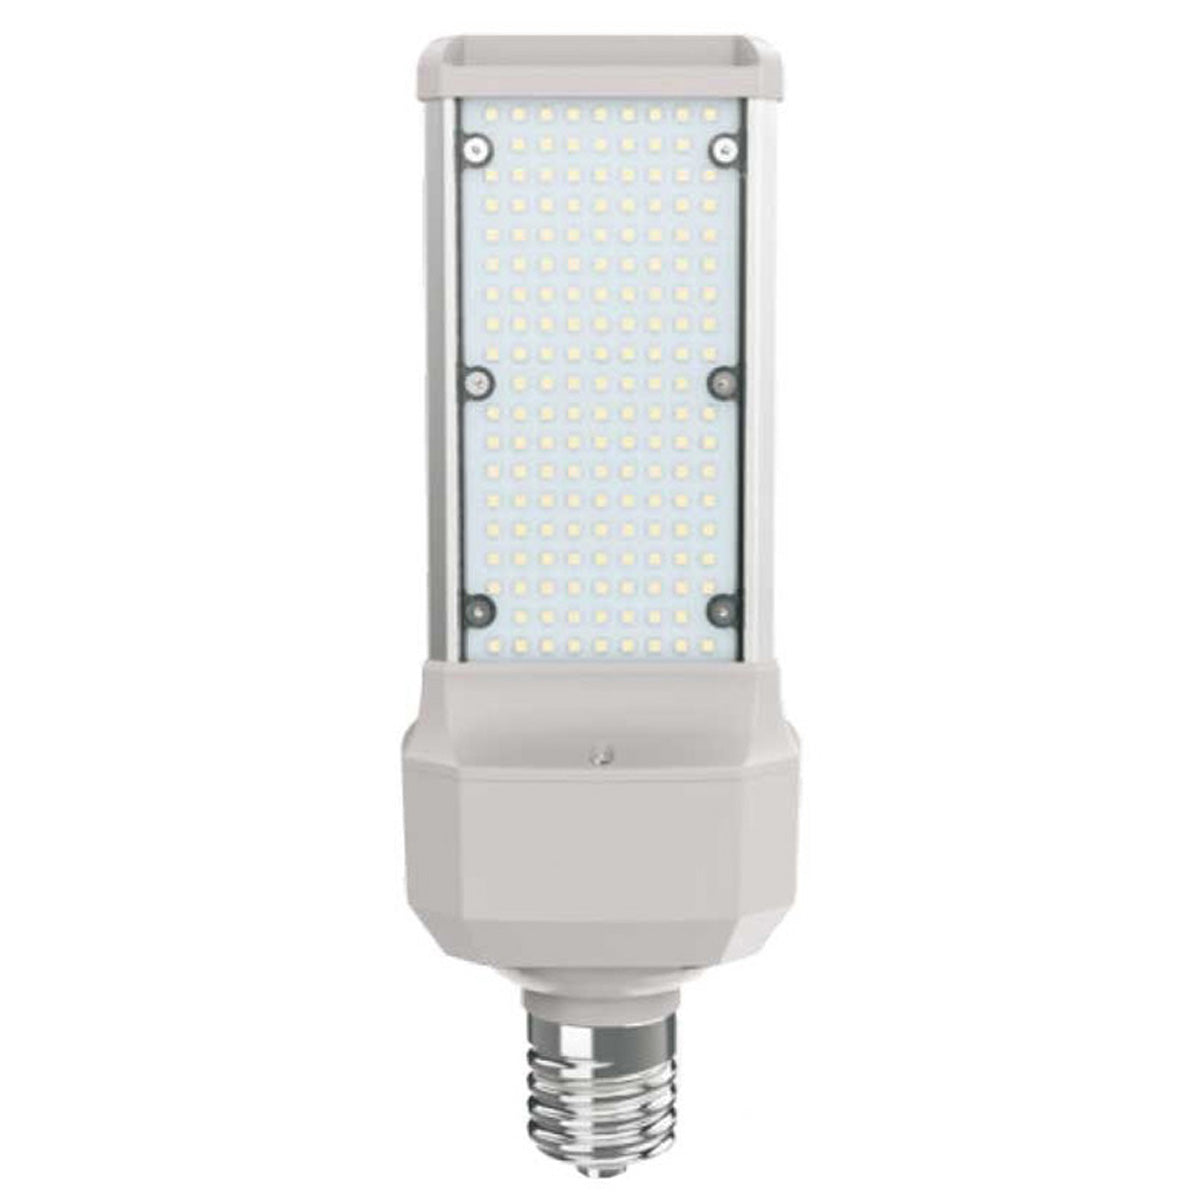 LED Street Lamp – 100 Watt